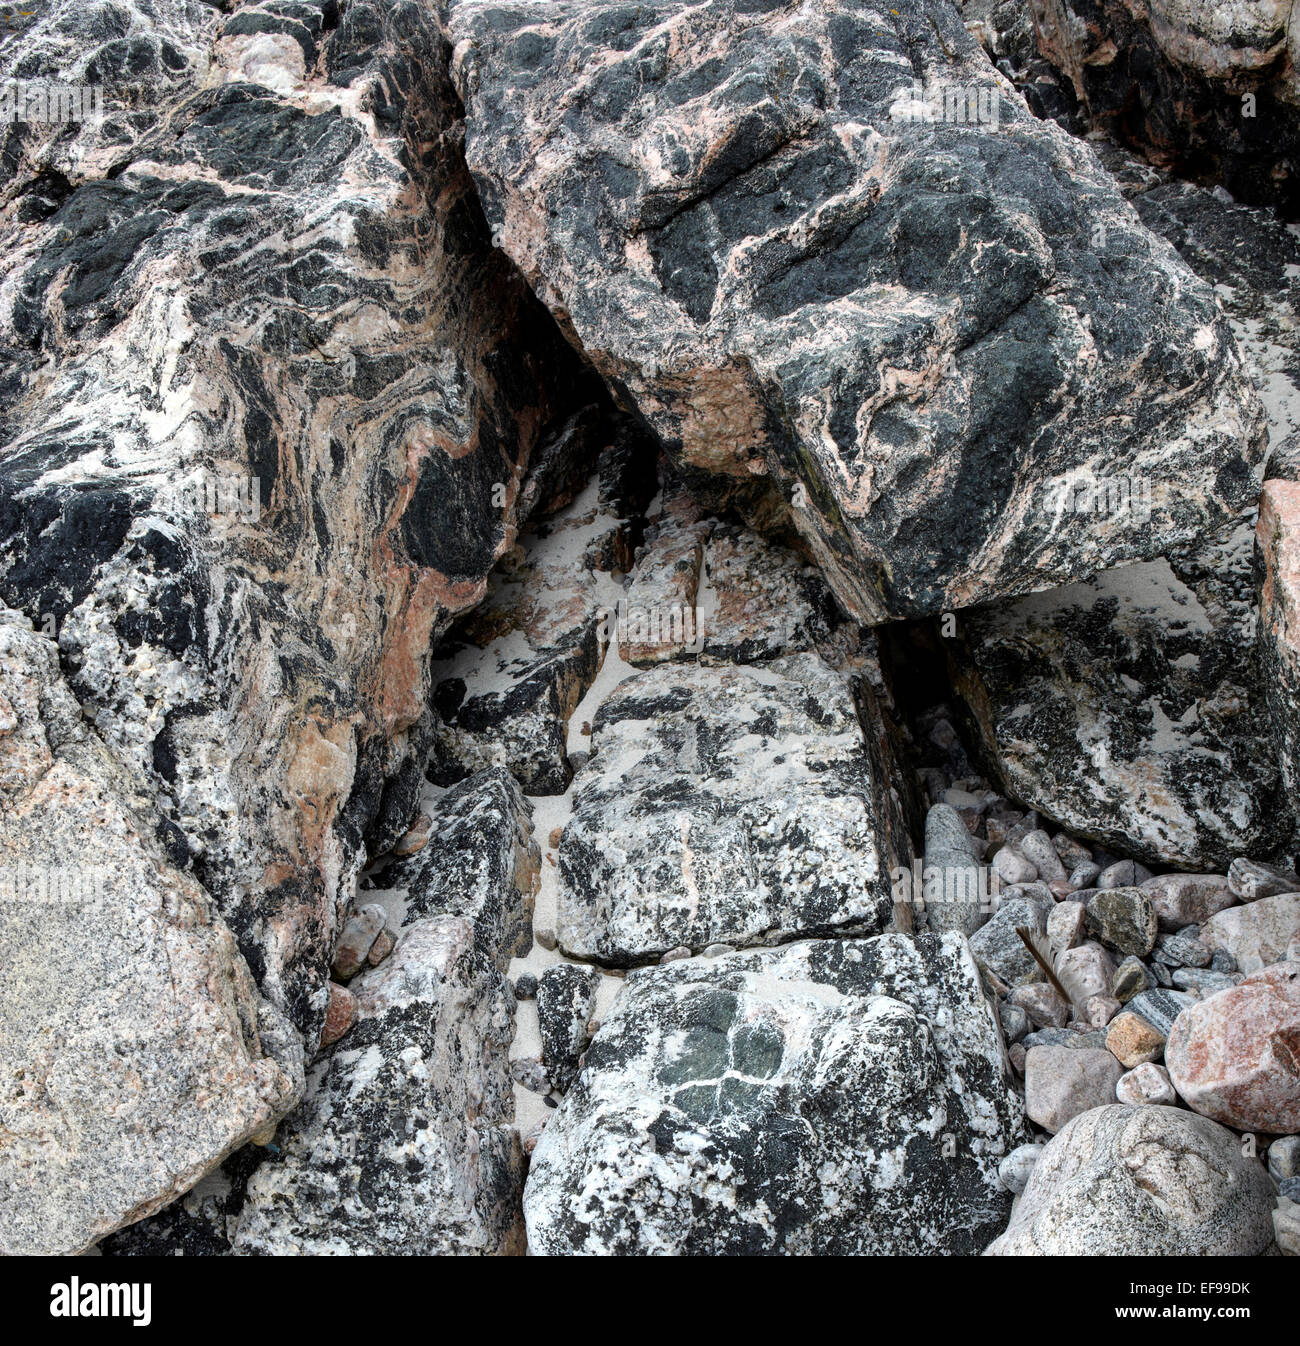 Dettaglio di Lewisian Gneiss rocce sulla Isle of Harris nelle Ebridi Esterne della Scozia Foto Stock